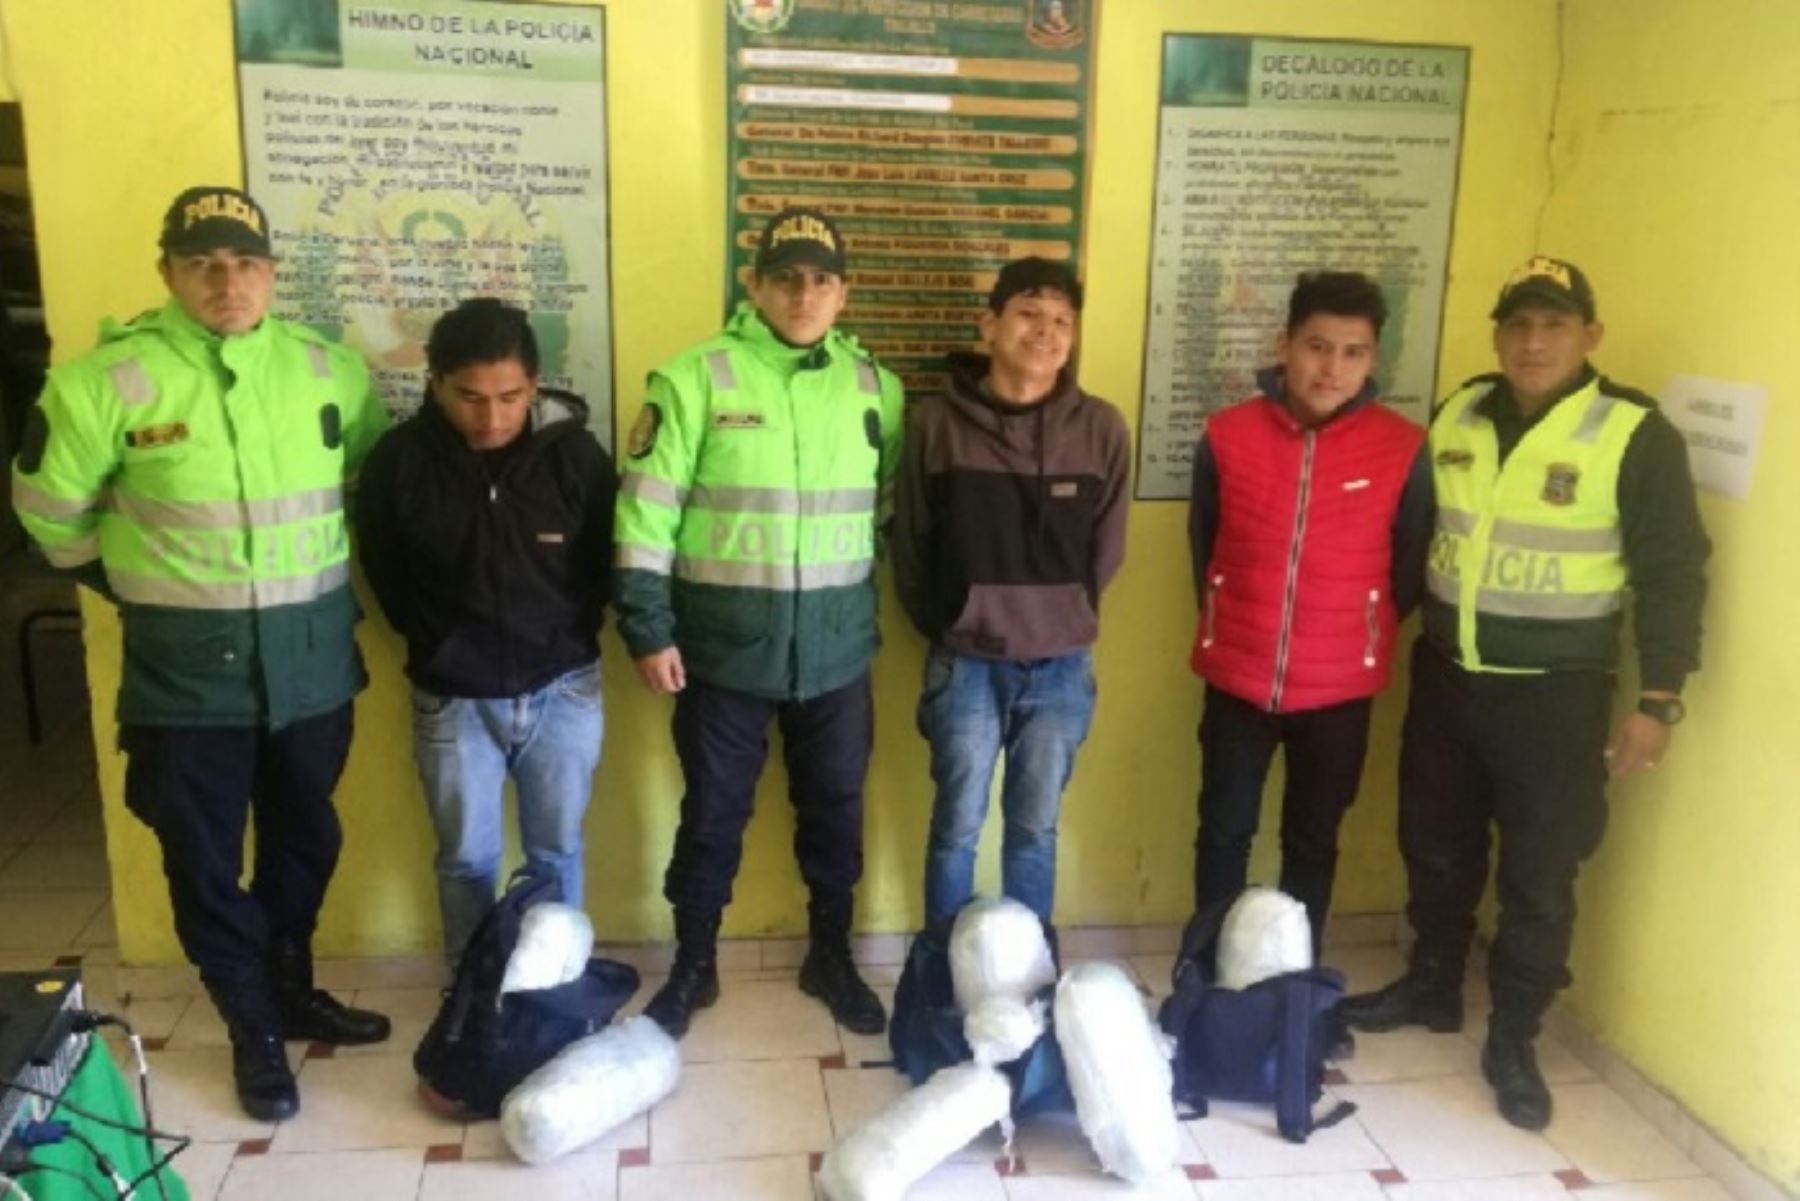 Las mochilas que contenían la droga pertenecían a Antony Aldair Rodríguez Rodríguez (20), Kennether Gonzalo Ríos Flores (19) y Diego Luna Nolberto Usbaldito (22).